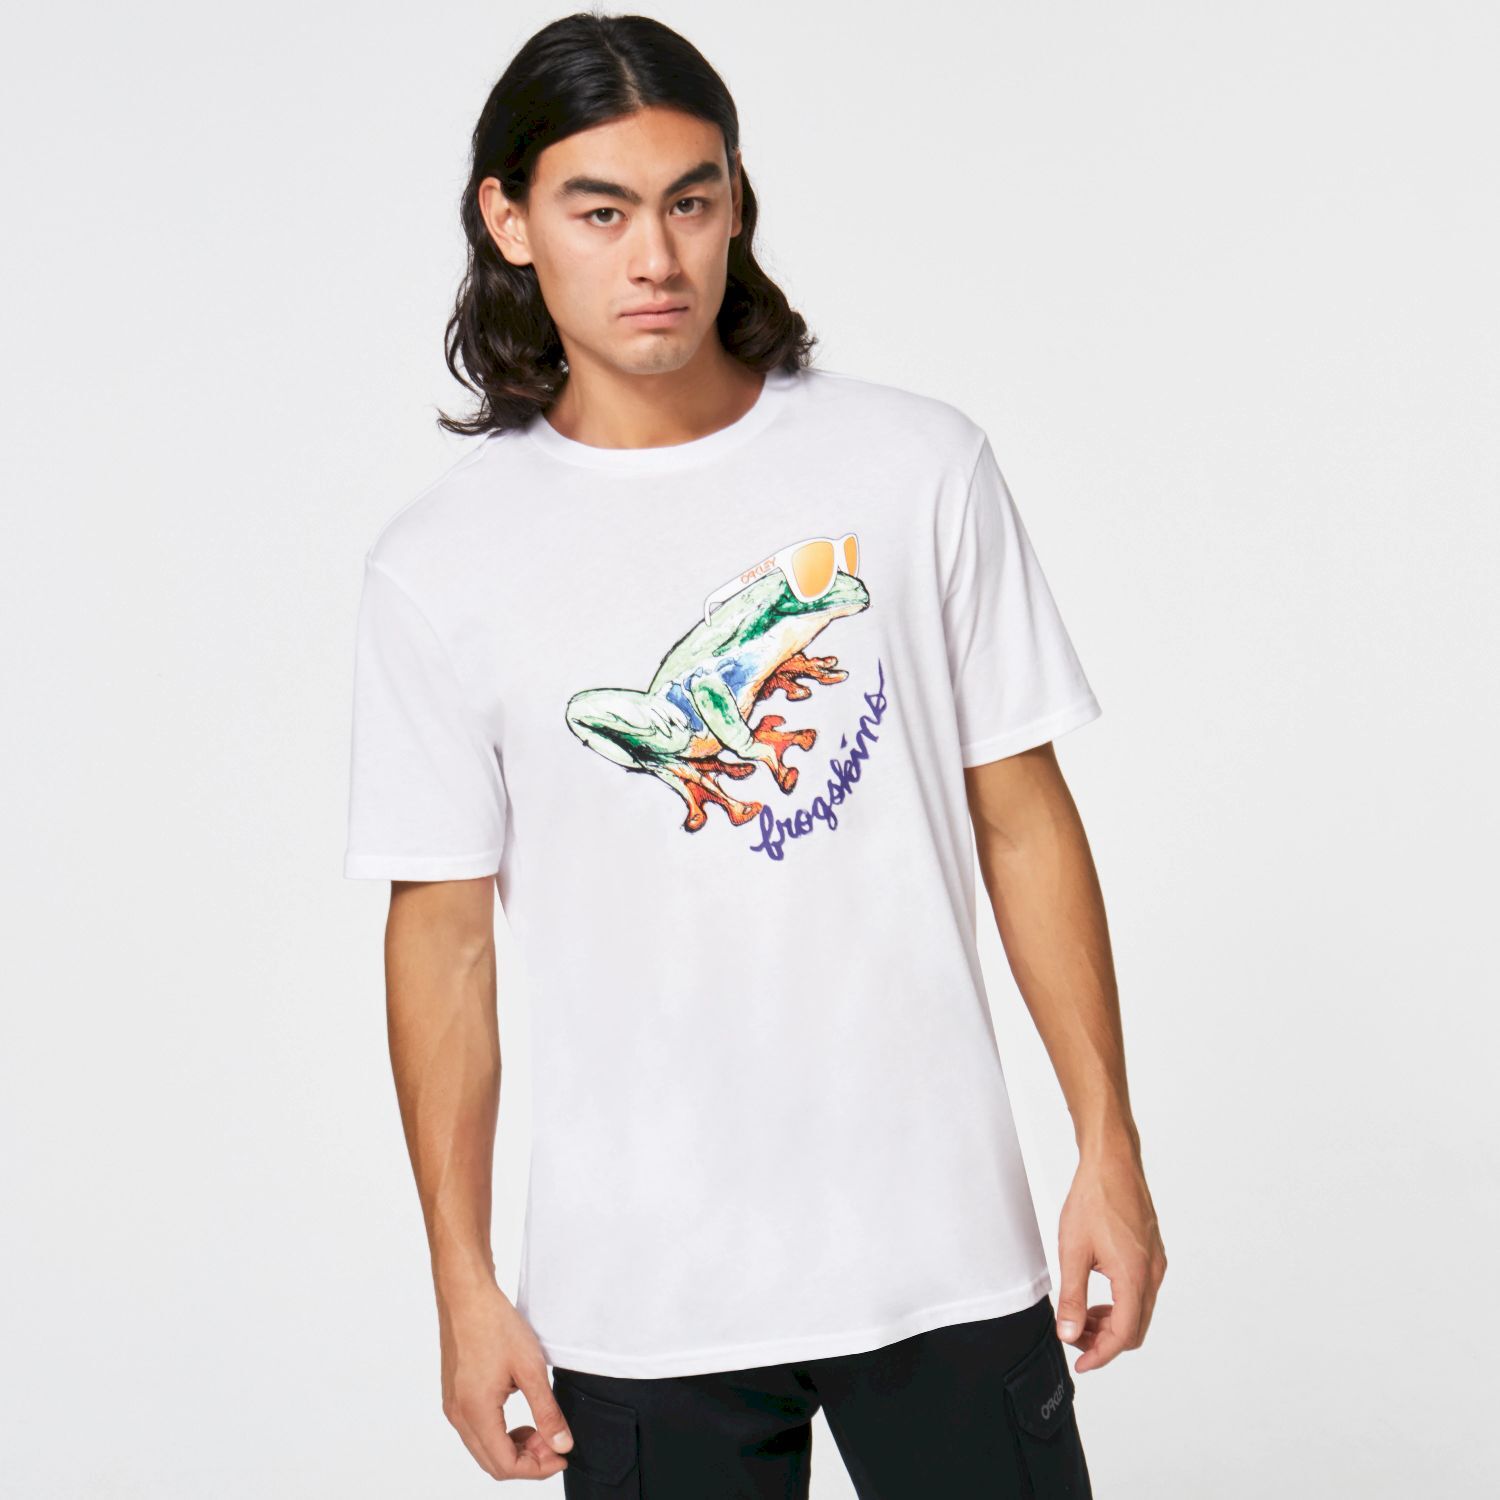 Oakley Jupiter Frog Tee - T-shirt - Men's